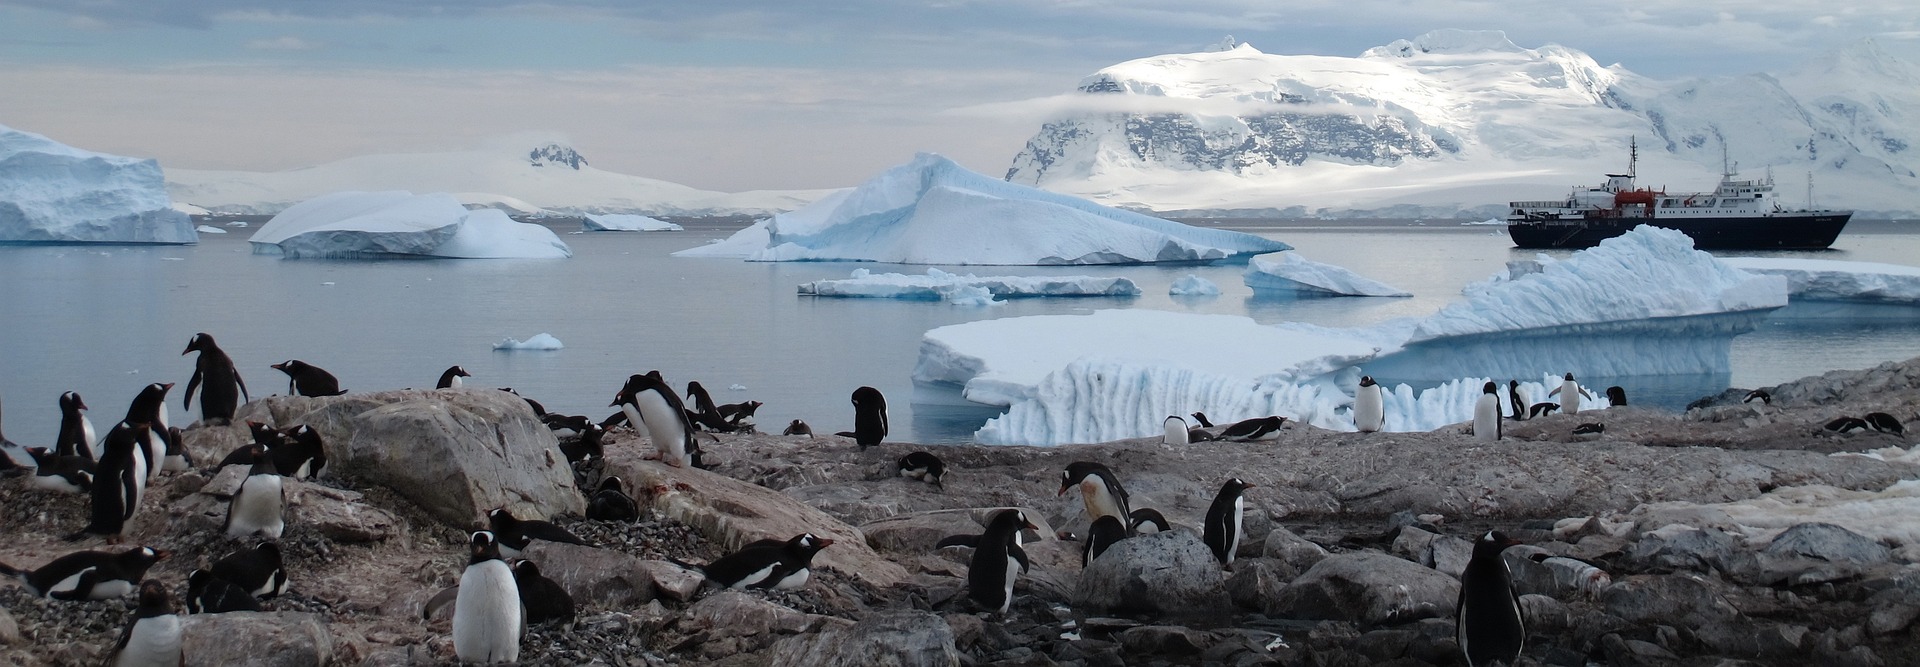 faune antarctique